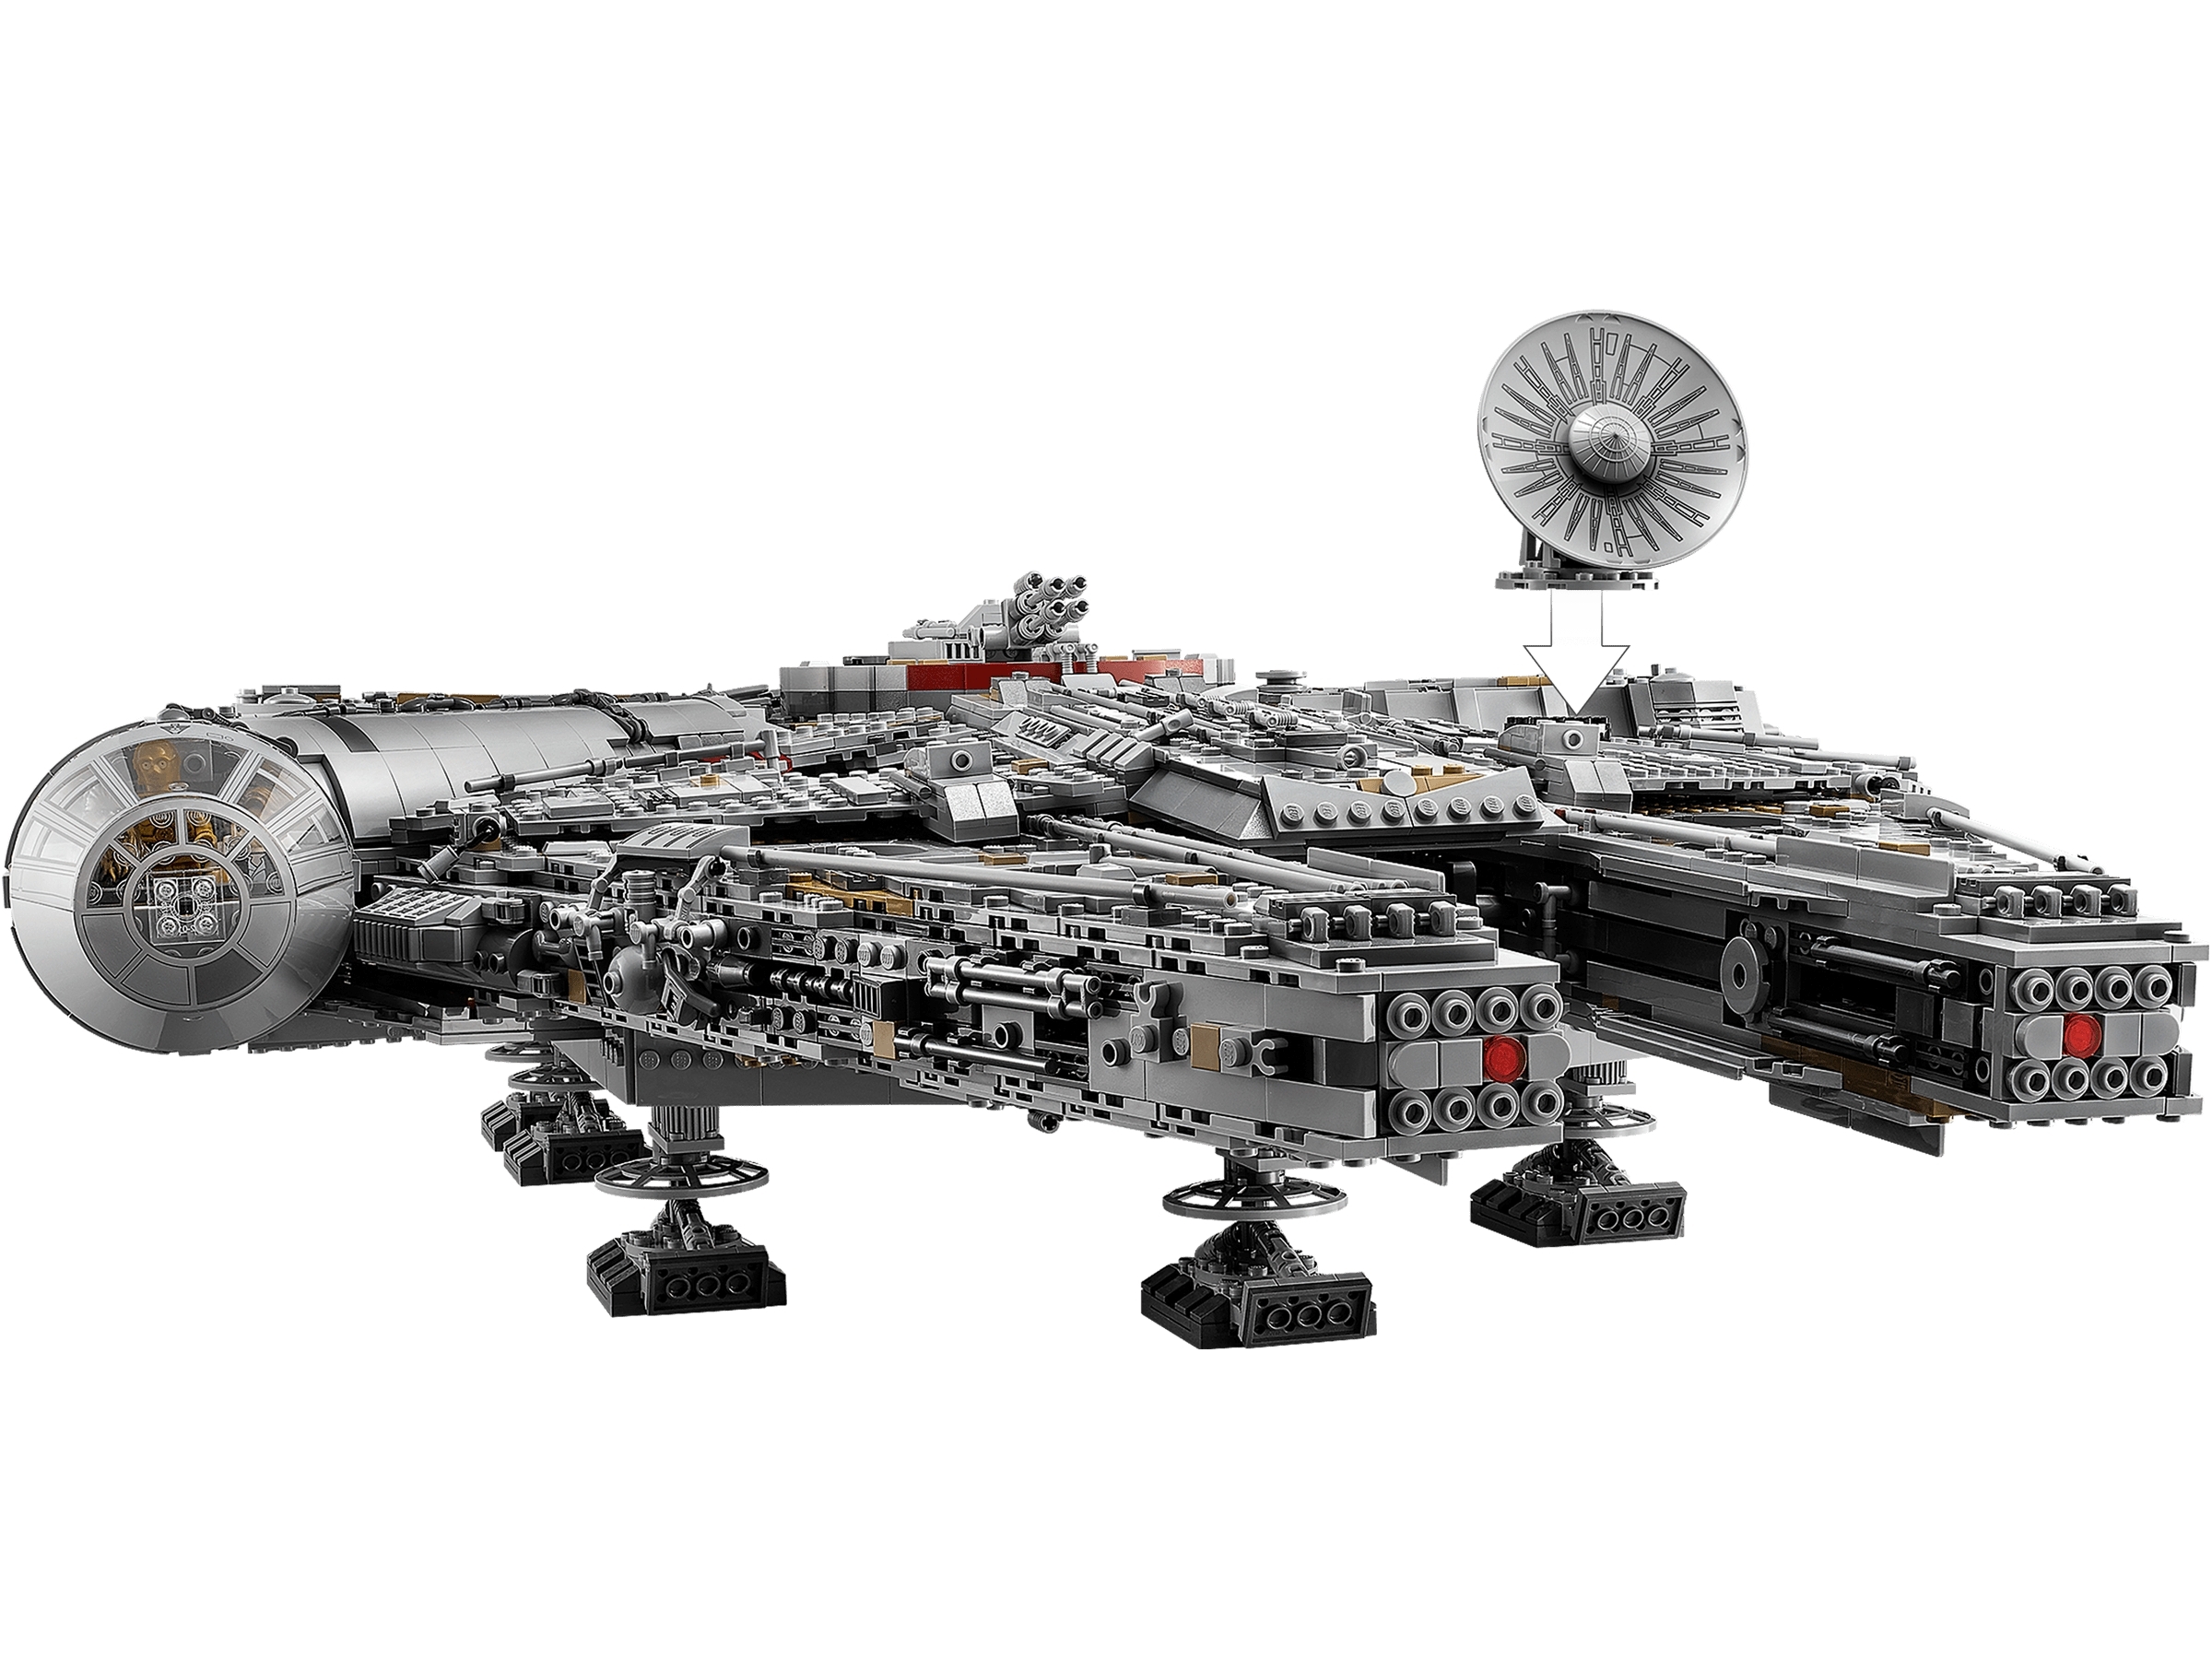 LEGO Star Wars : Un gigantesque set du Faucon Millenium dévoilé